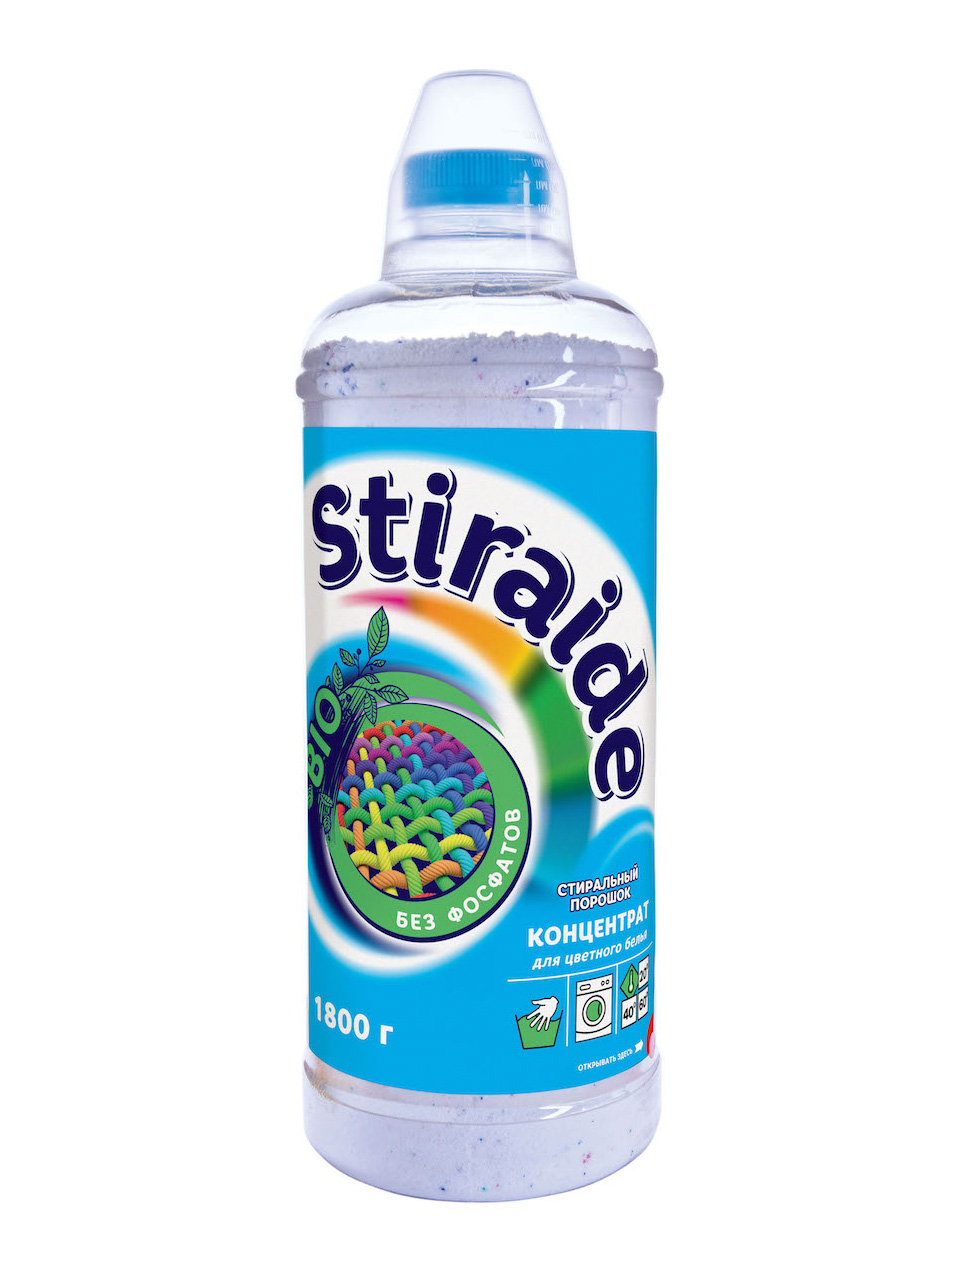 Стиральный порошок Ваше хозяйство Stiraide концентрат для цветного белья 1,8кг